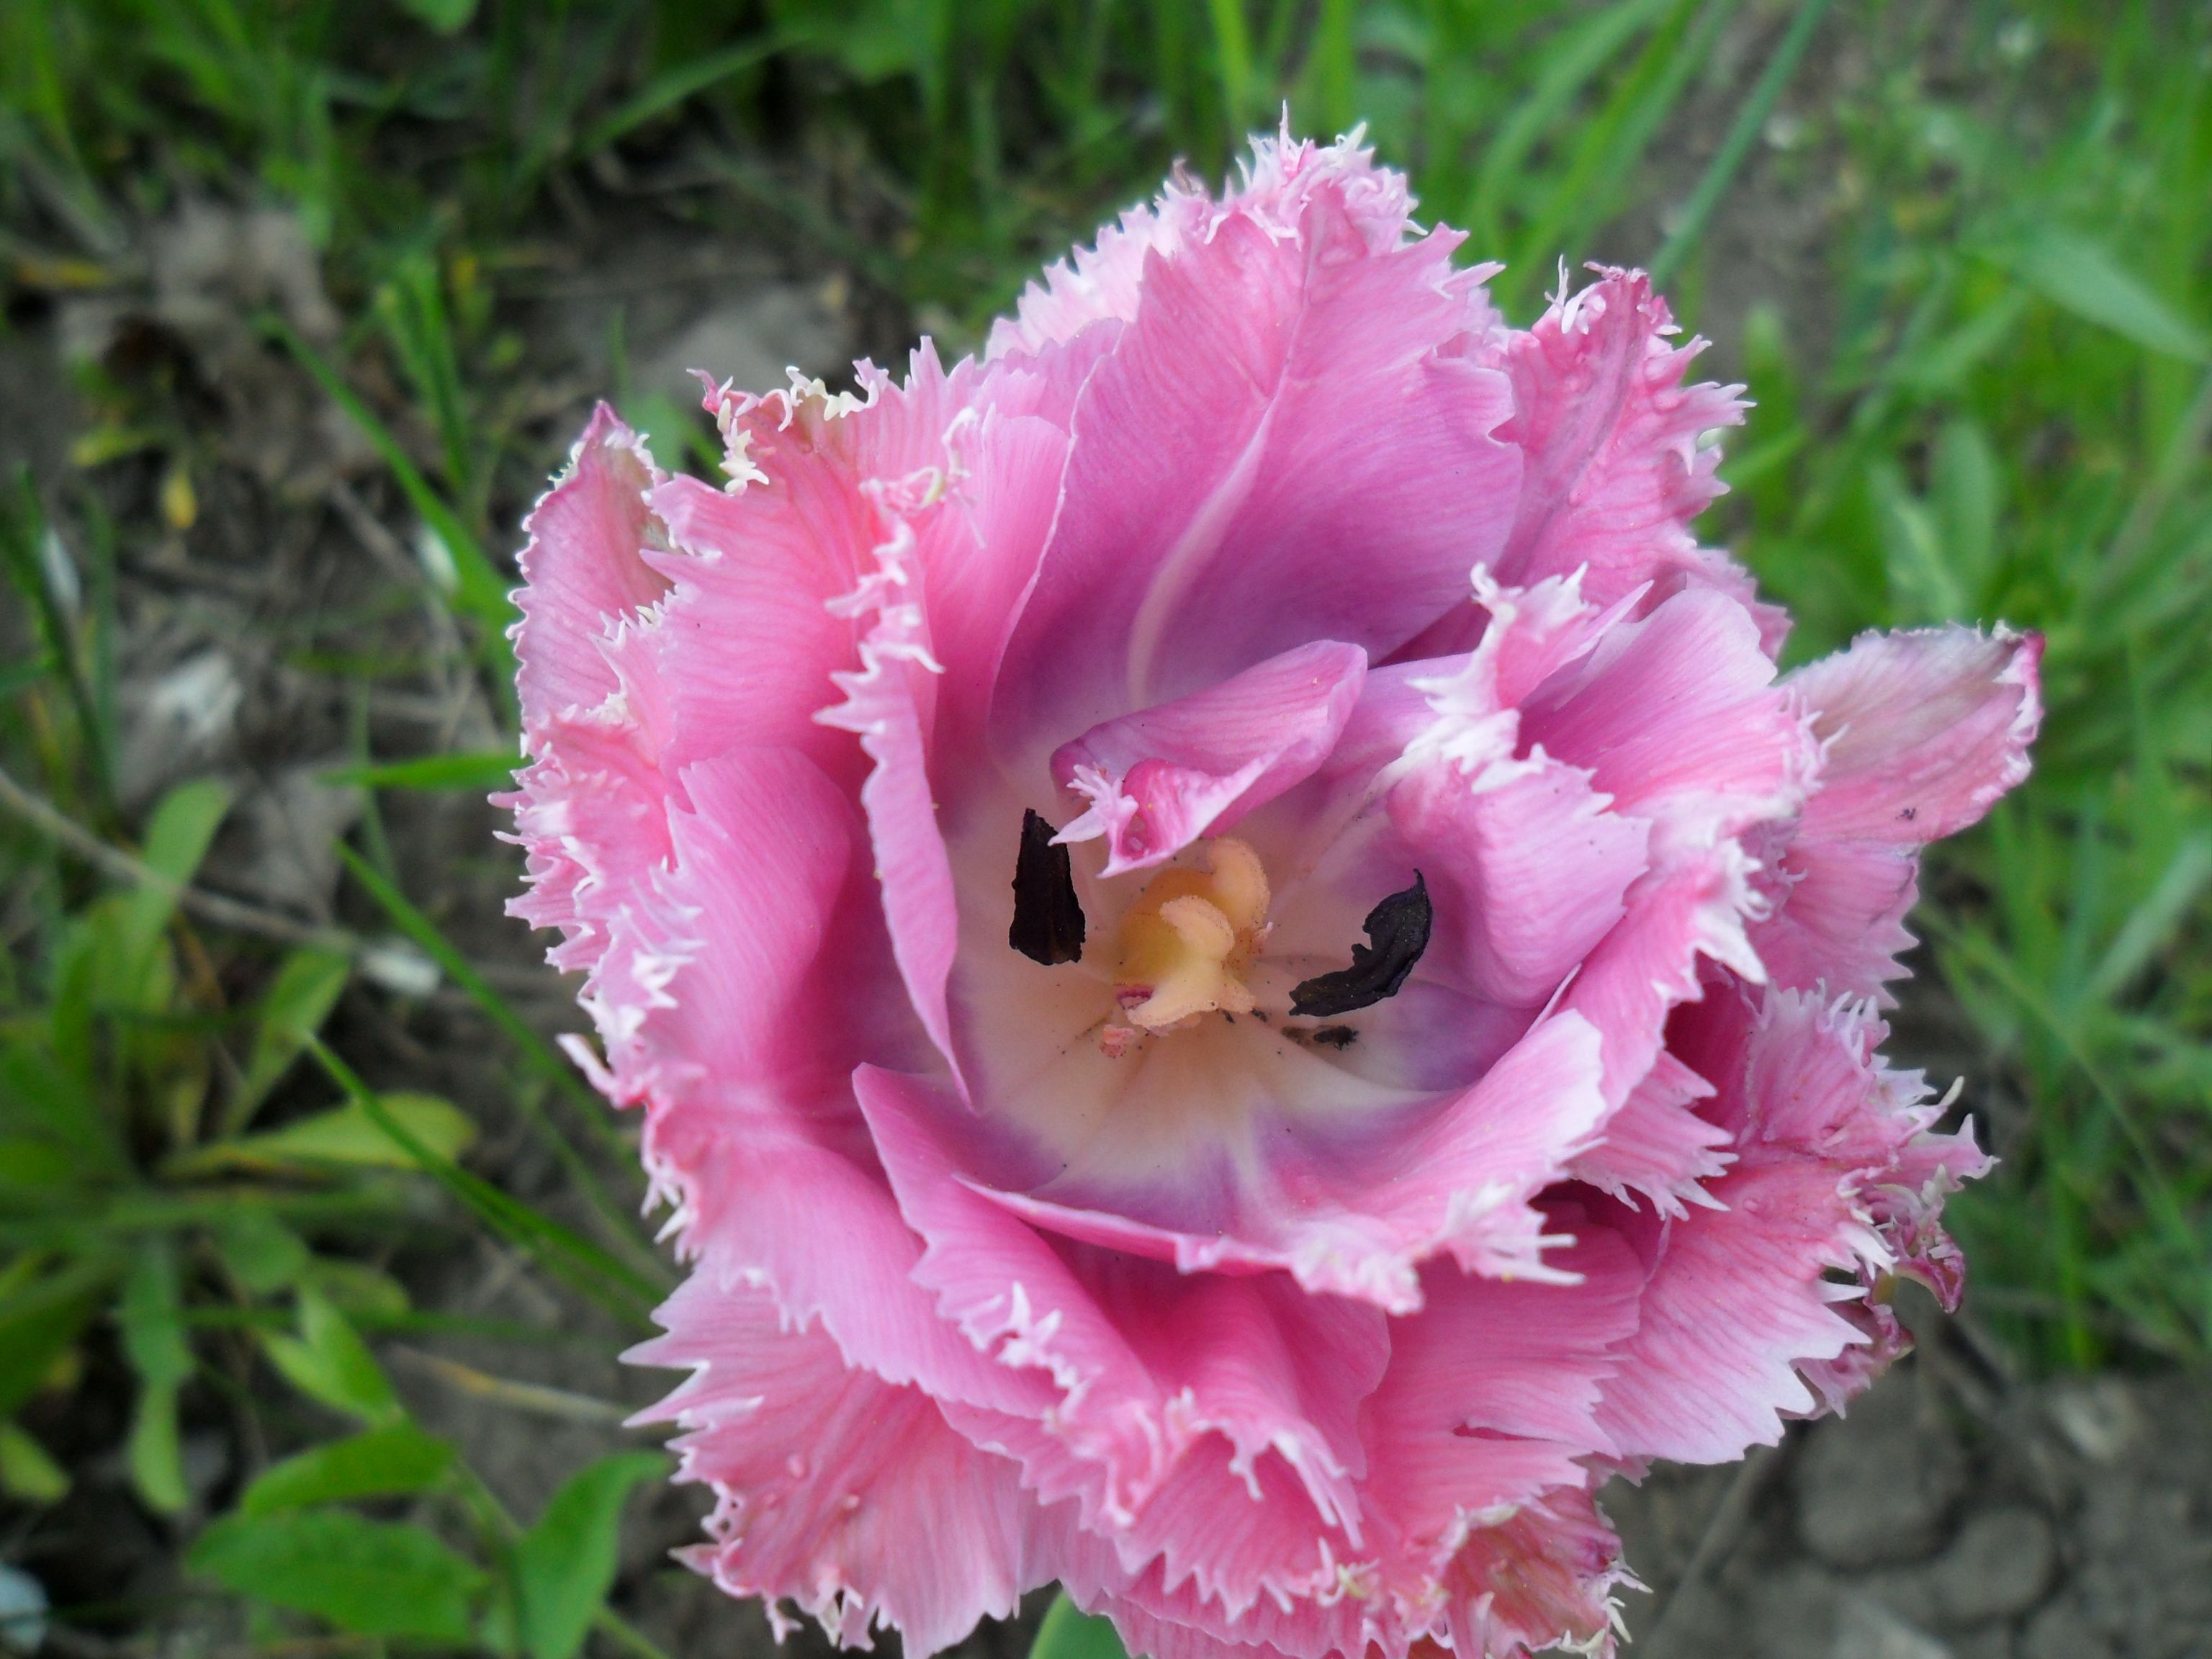 Тюльпан ньюкасл фото и описание сорта